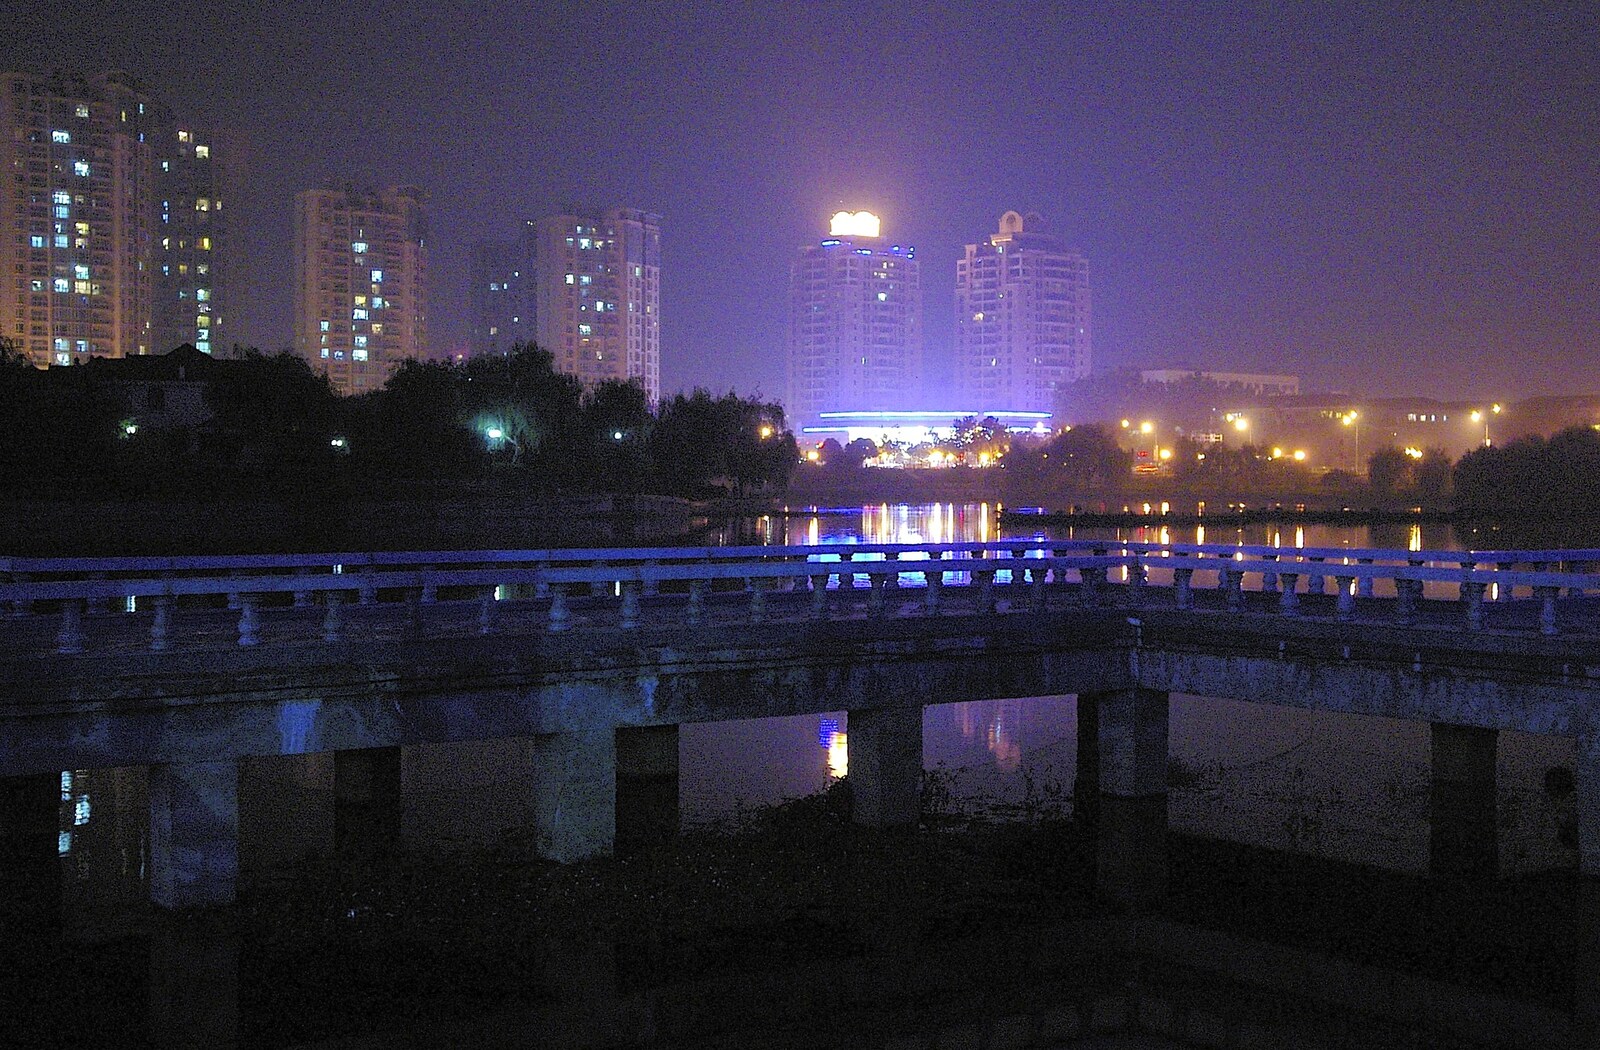 A view of downtown Nanjing from Nanjing by Night, Nanjing, Jiangsu Province, China - 4th October 2006